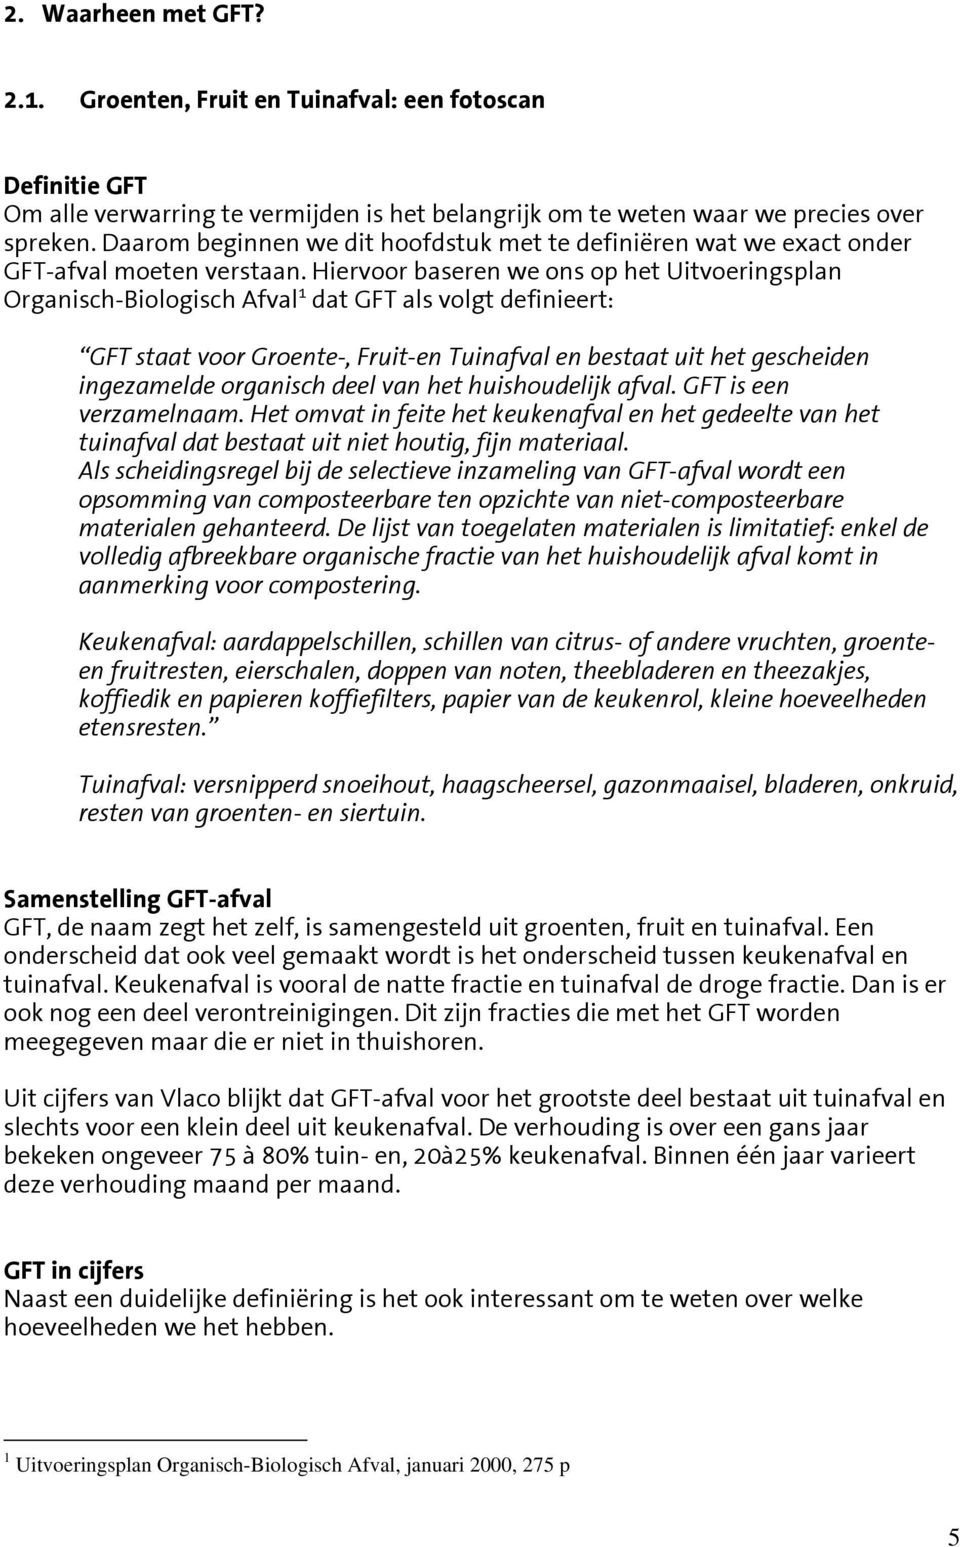 Hiervoor baseren we ons op het Uitvoeringsplan Organisch-Biologisch Afval 1 dat GFT als volgt definieert: GFT staat voor Groente-, Fruit-en Tuinafval en bestaat uit het gescheiden ingezamelde